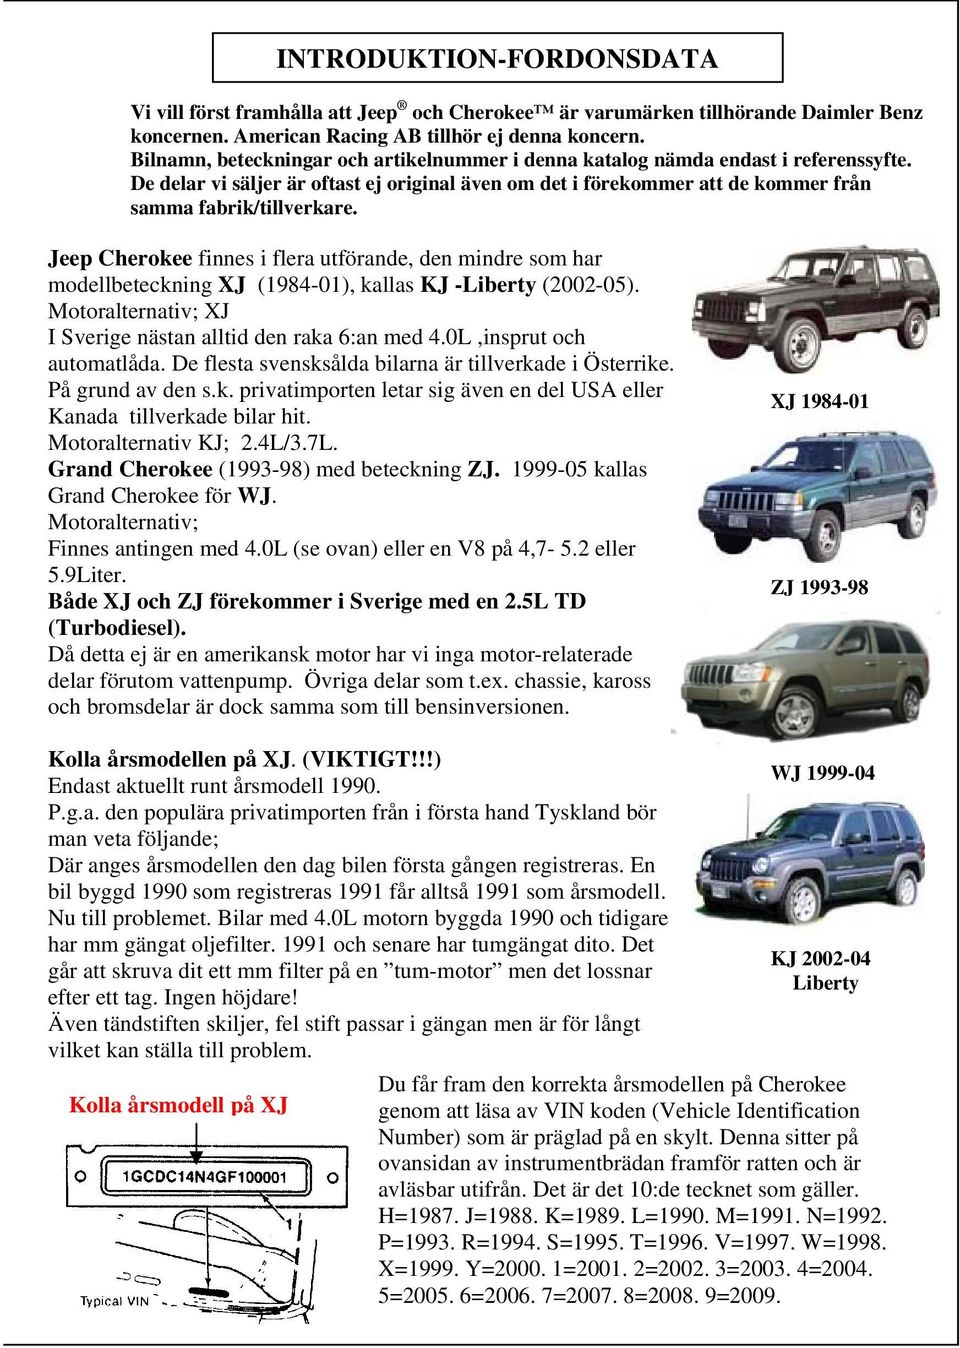 Jeep Cherokee finnes i flera utförande, den mindre som har modellbeteckning XJ (1984-01), kallas KJ -Liberty (2002-05). Motoralternativ; XJ I Sverige nästan alltid den raka 6:an med 4.